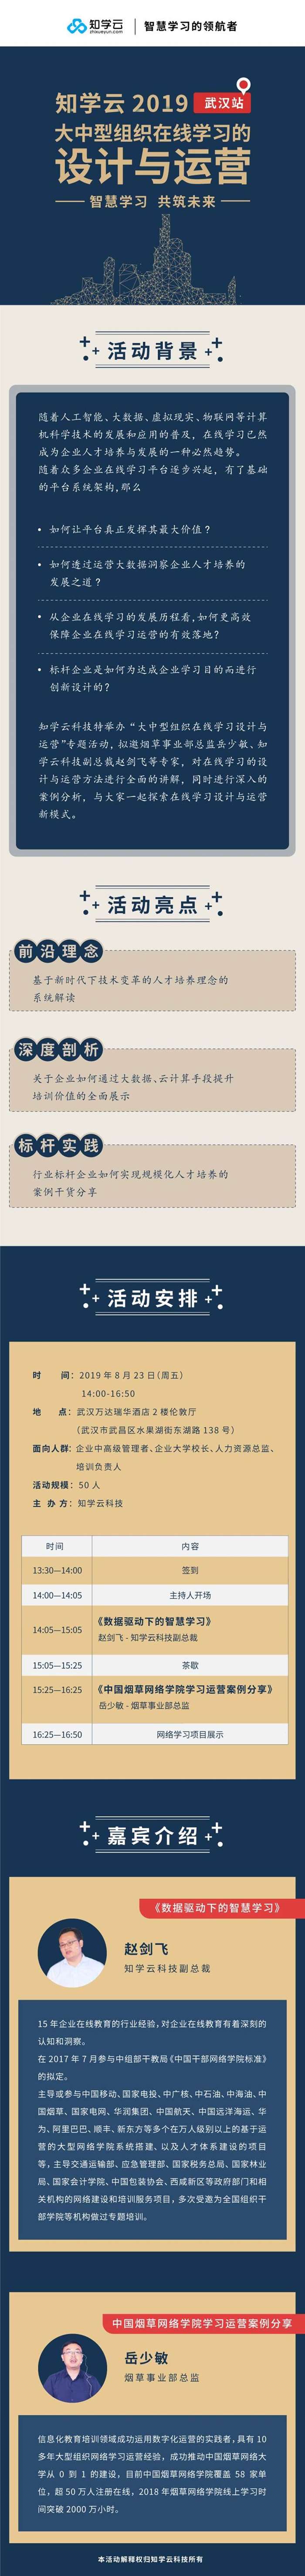 活动行-武汉-大中型组织在线学习的设计与运营(1).jpg